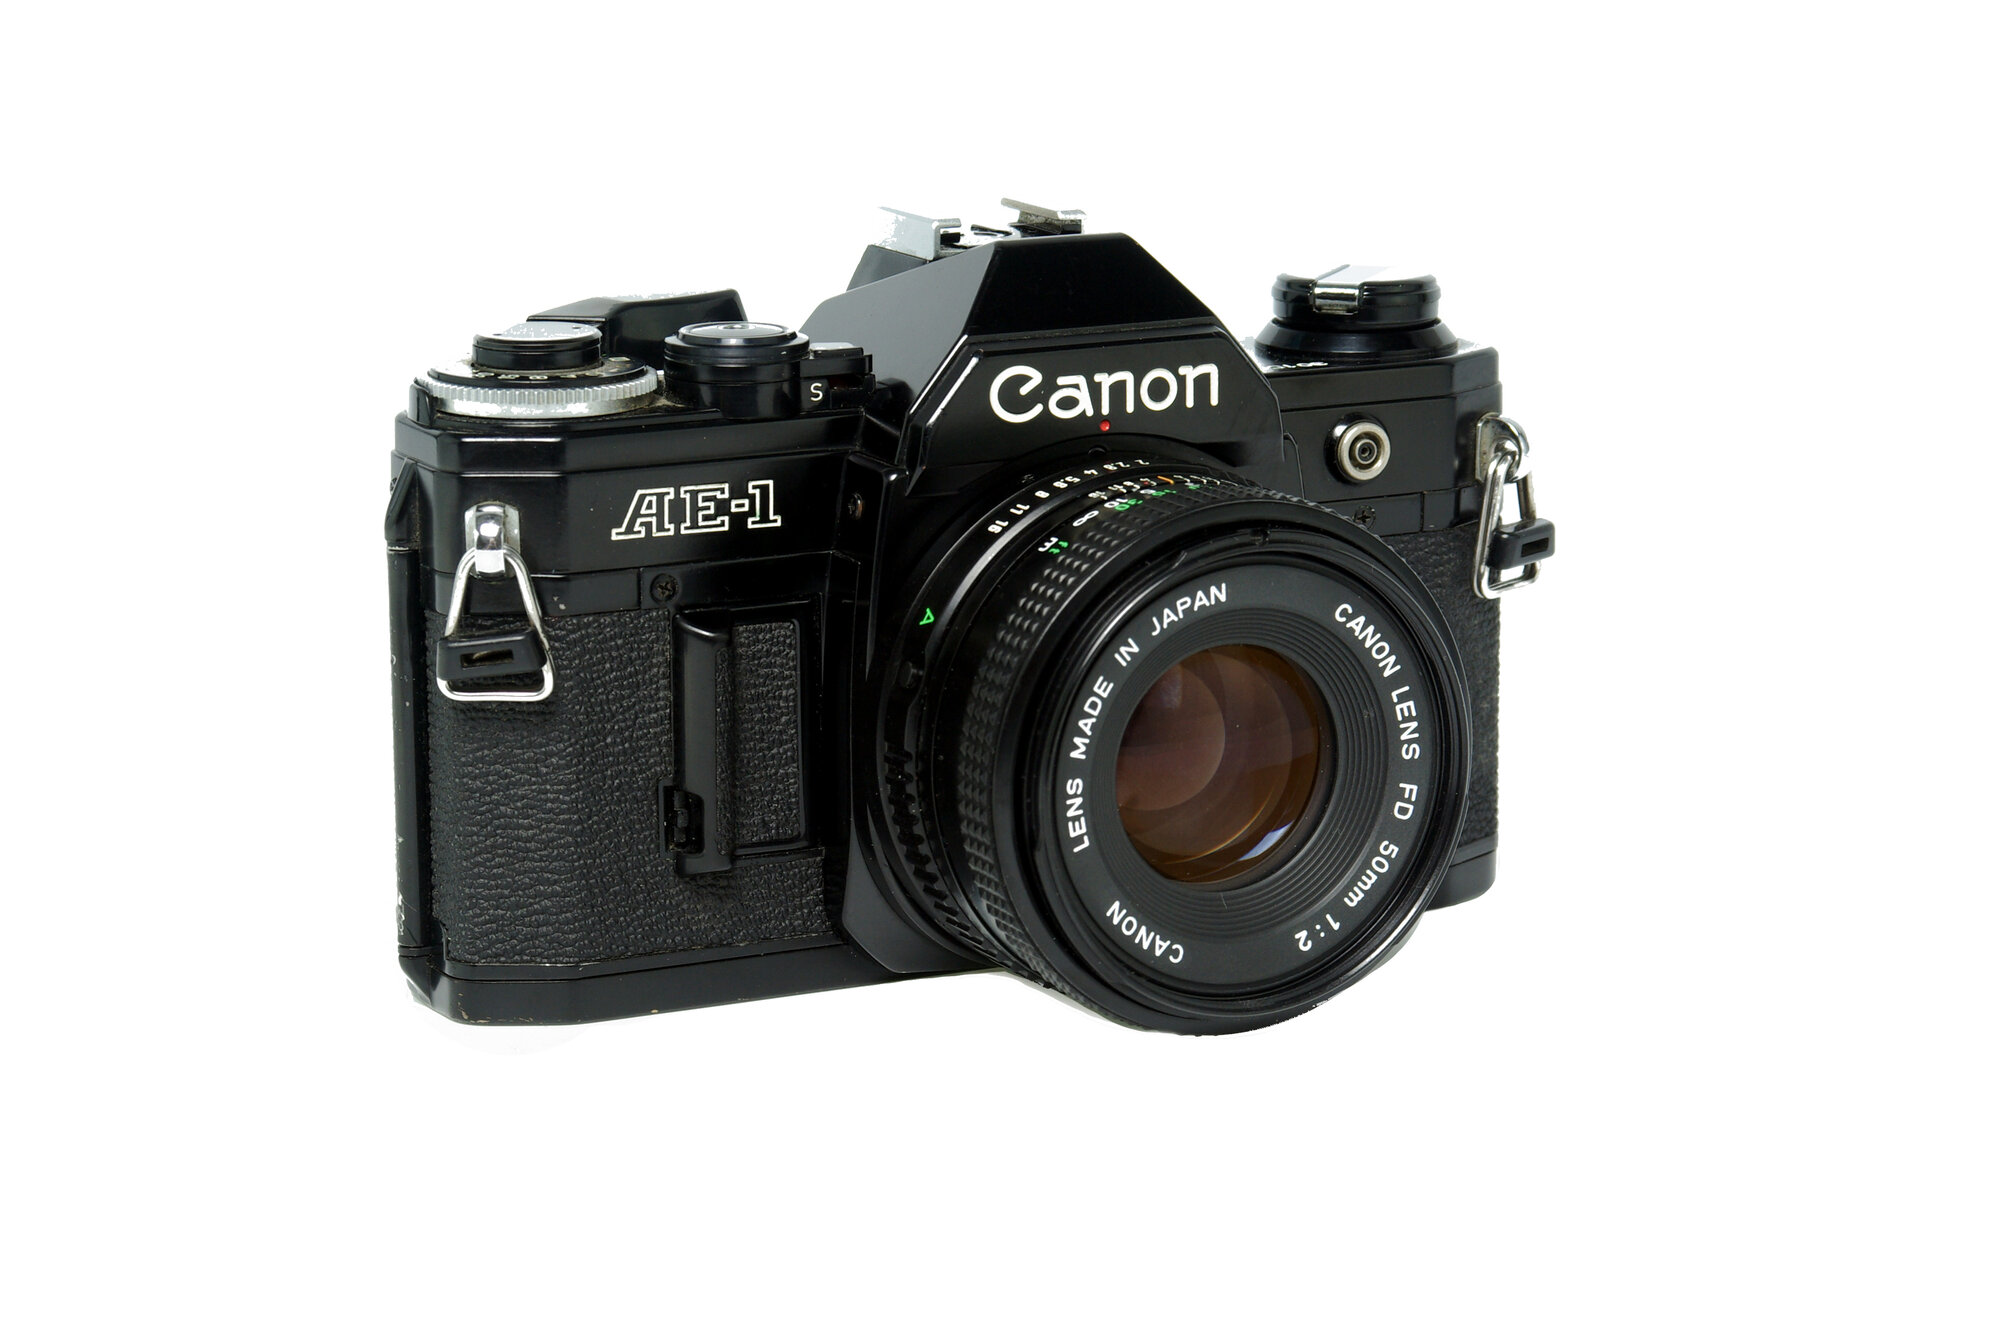 Canon AE-1 + Canon FD 50mm f2